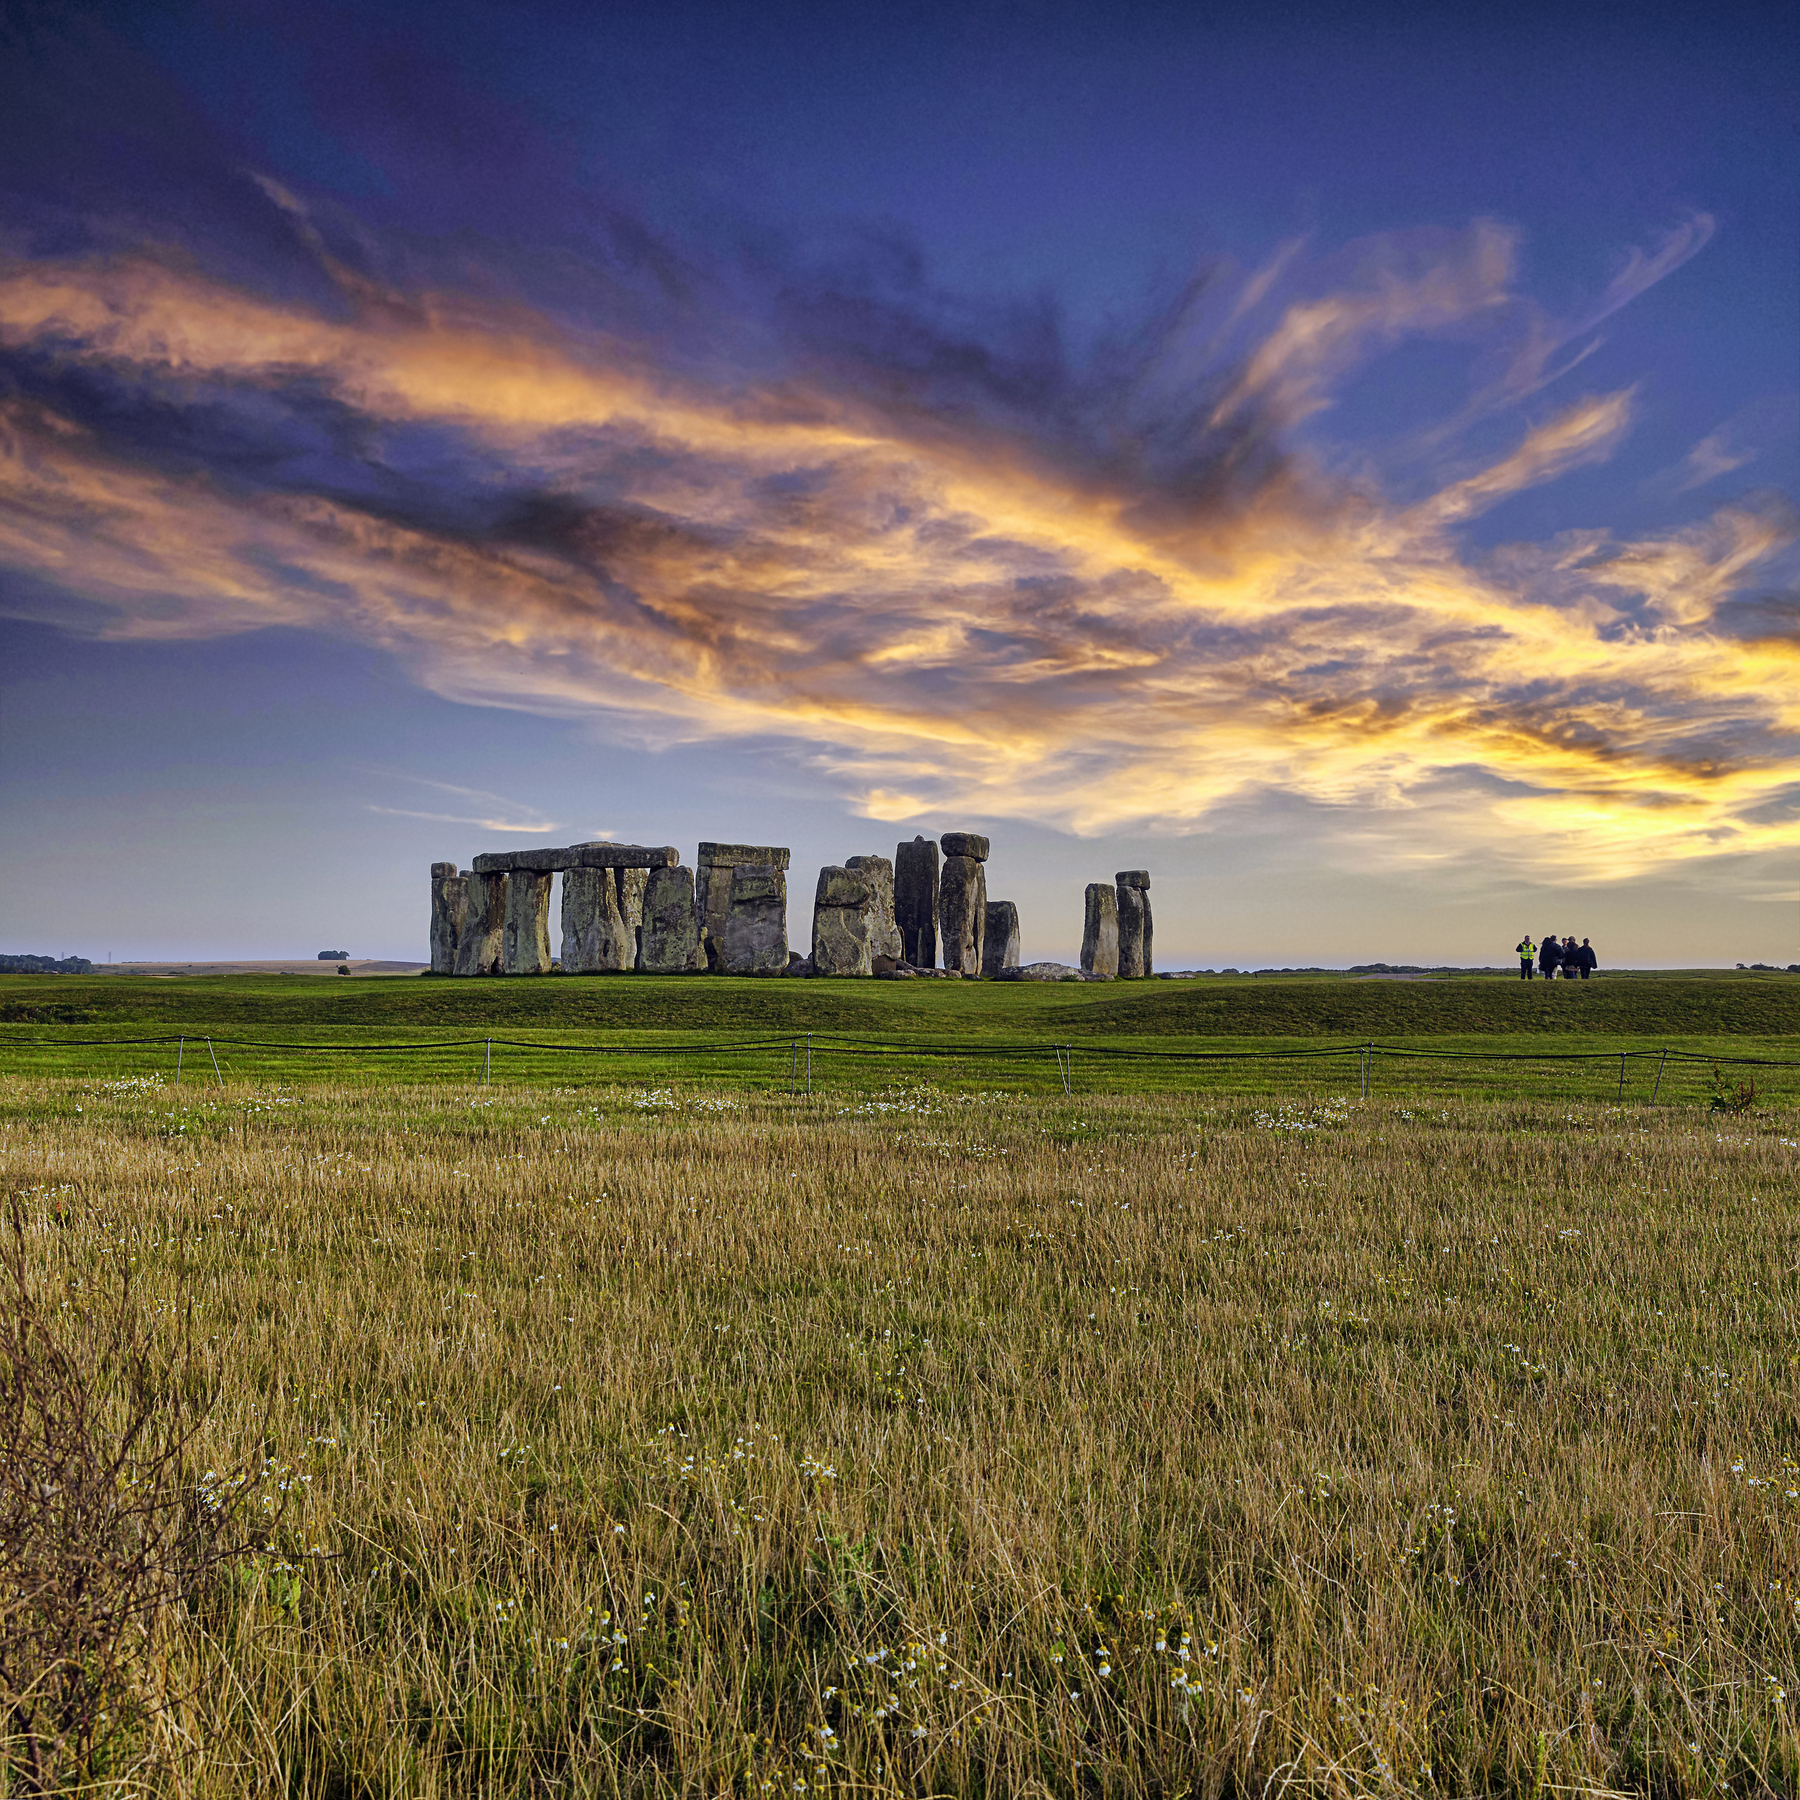 Resolvieron el secreto de Stonehenge y por eso pudieron construirlo. El extraordinario vídeo ya está disponible online